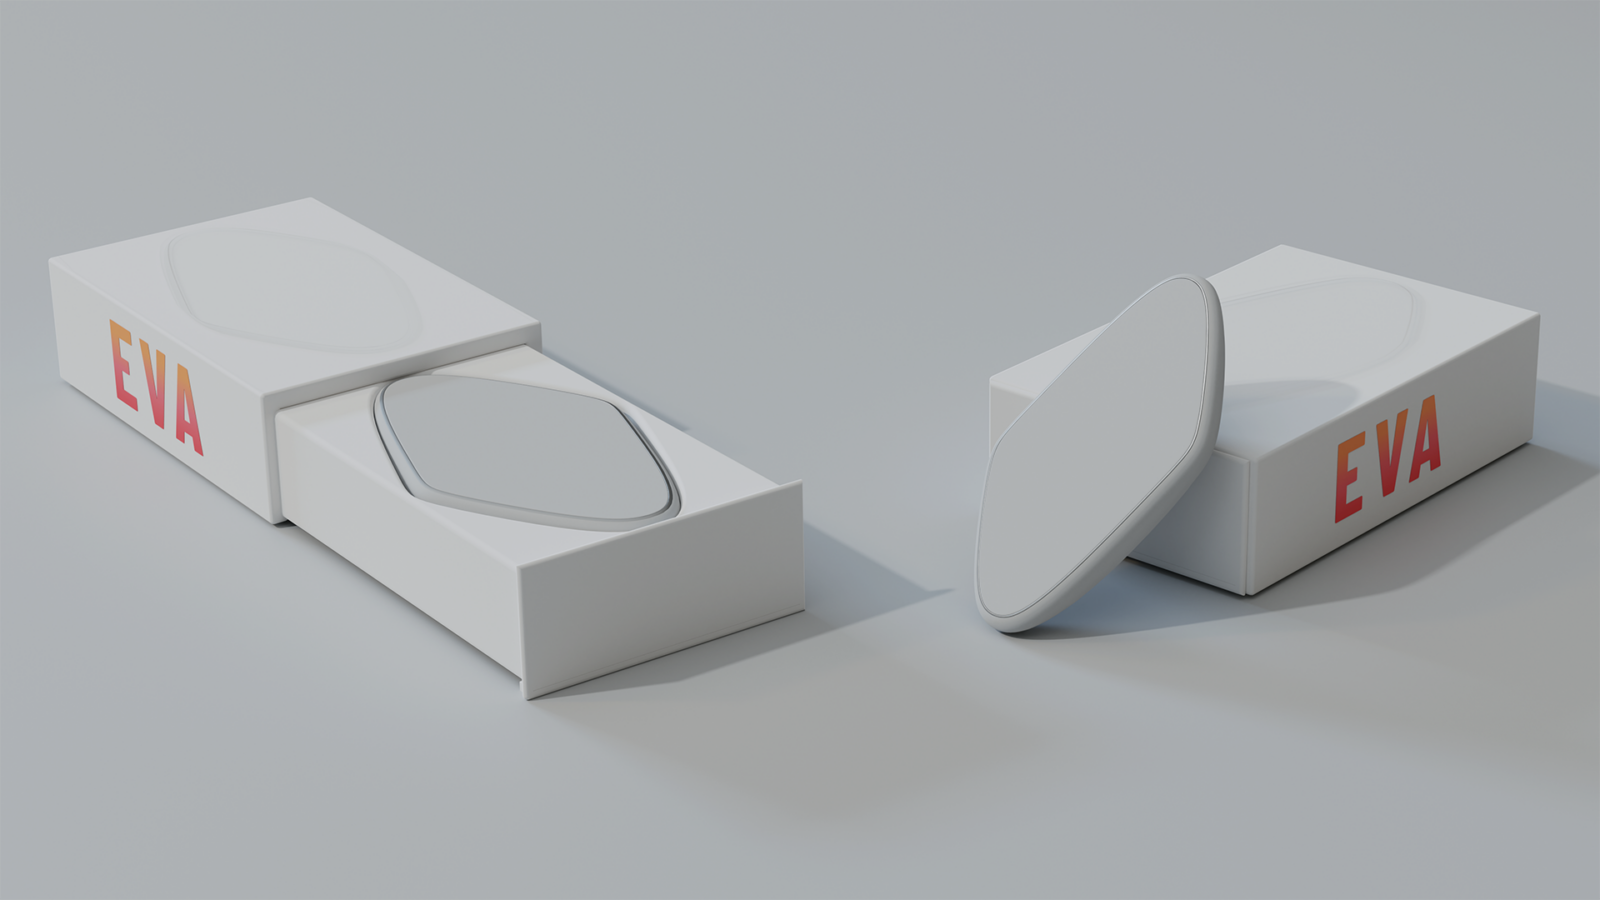 EVA render with packaging 